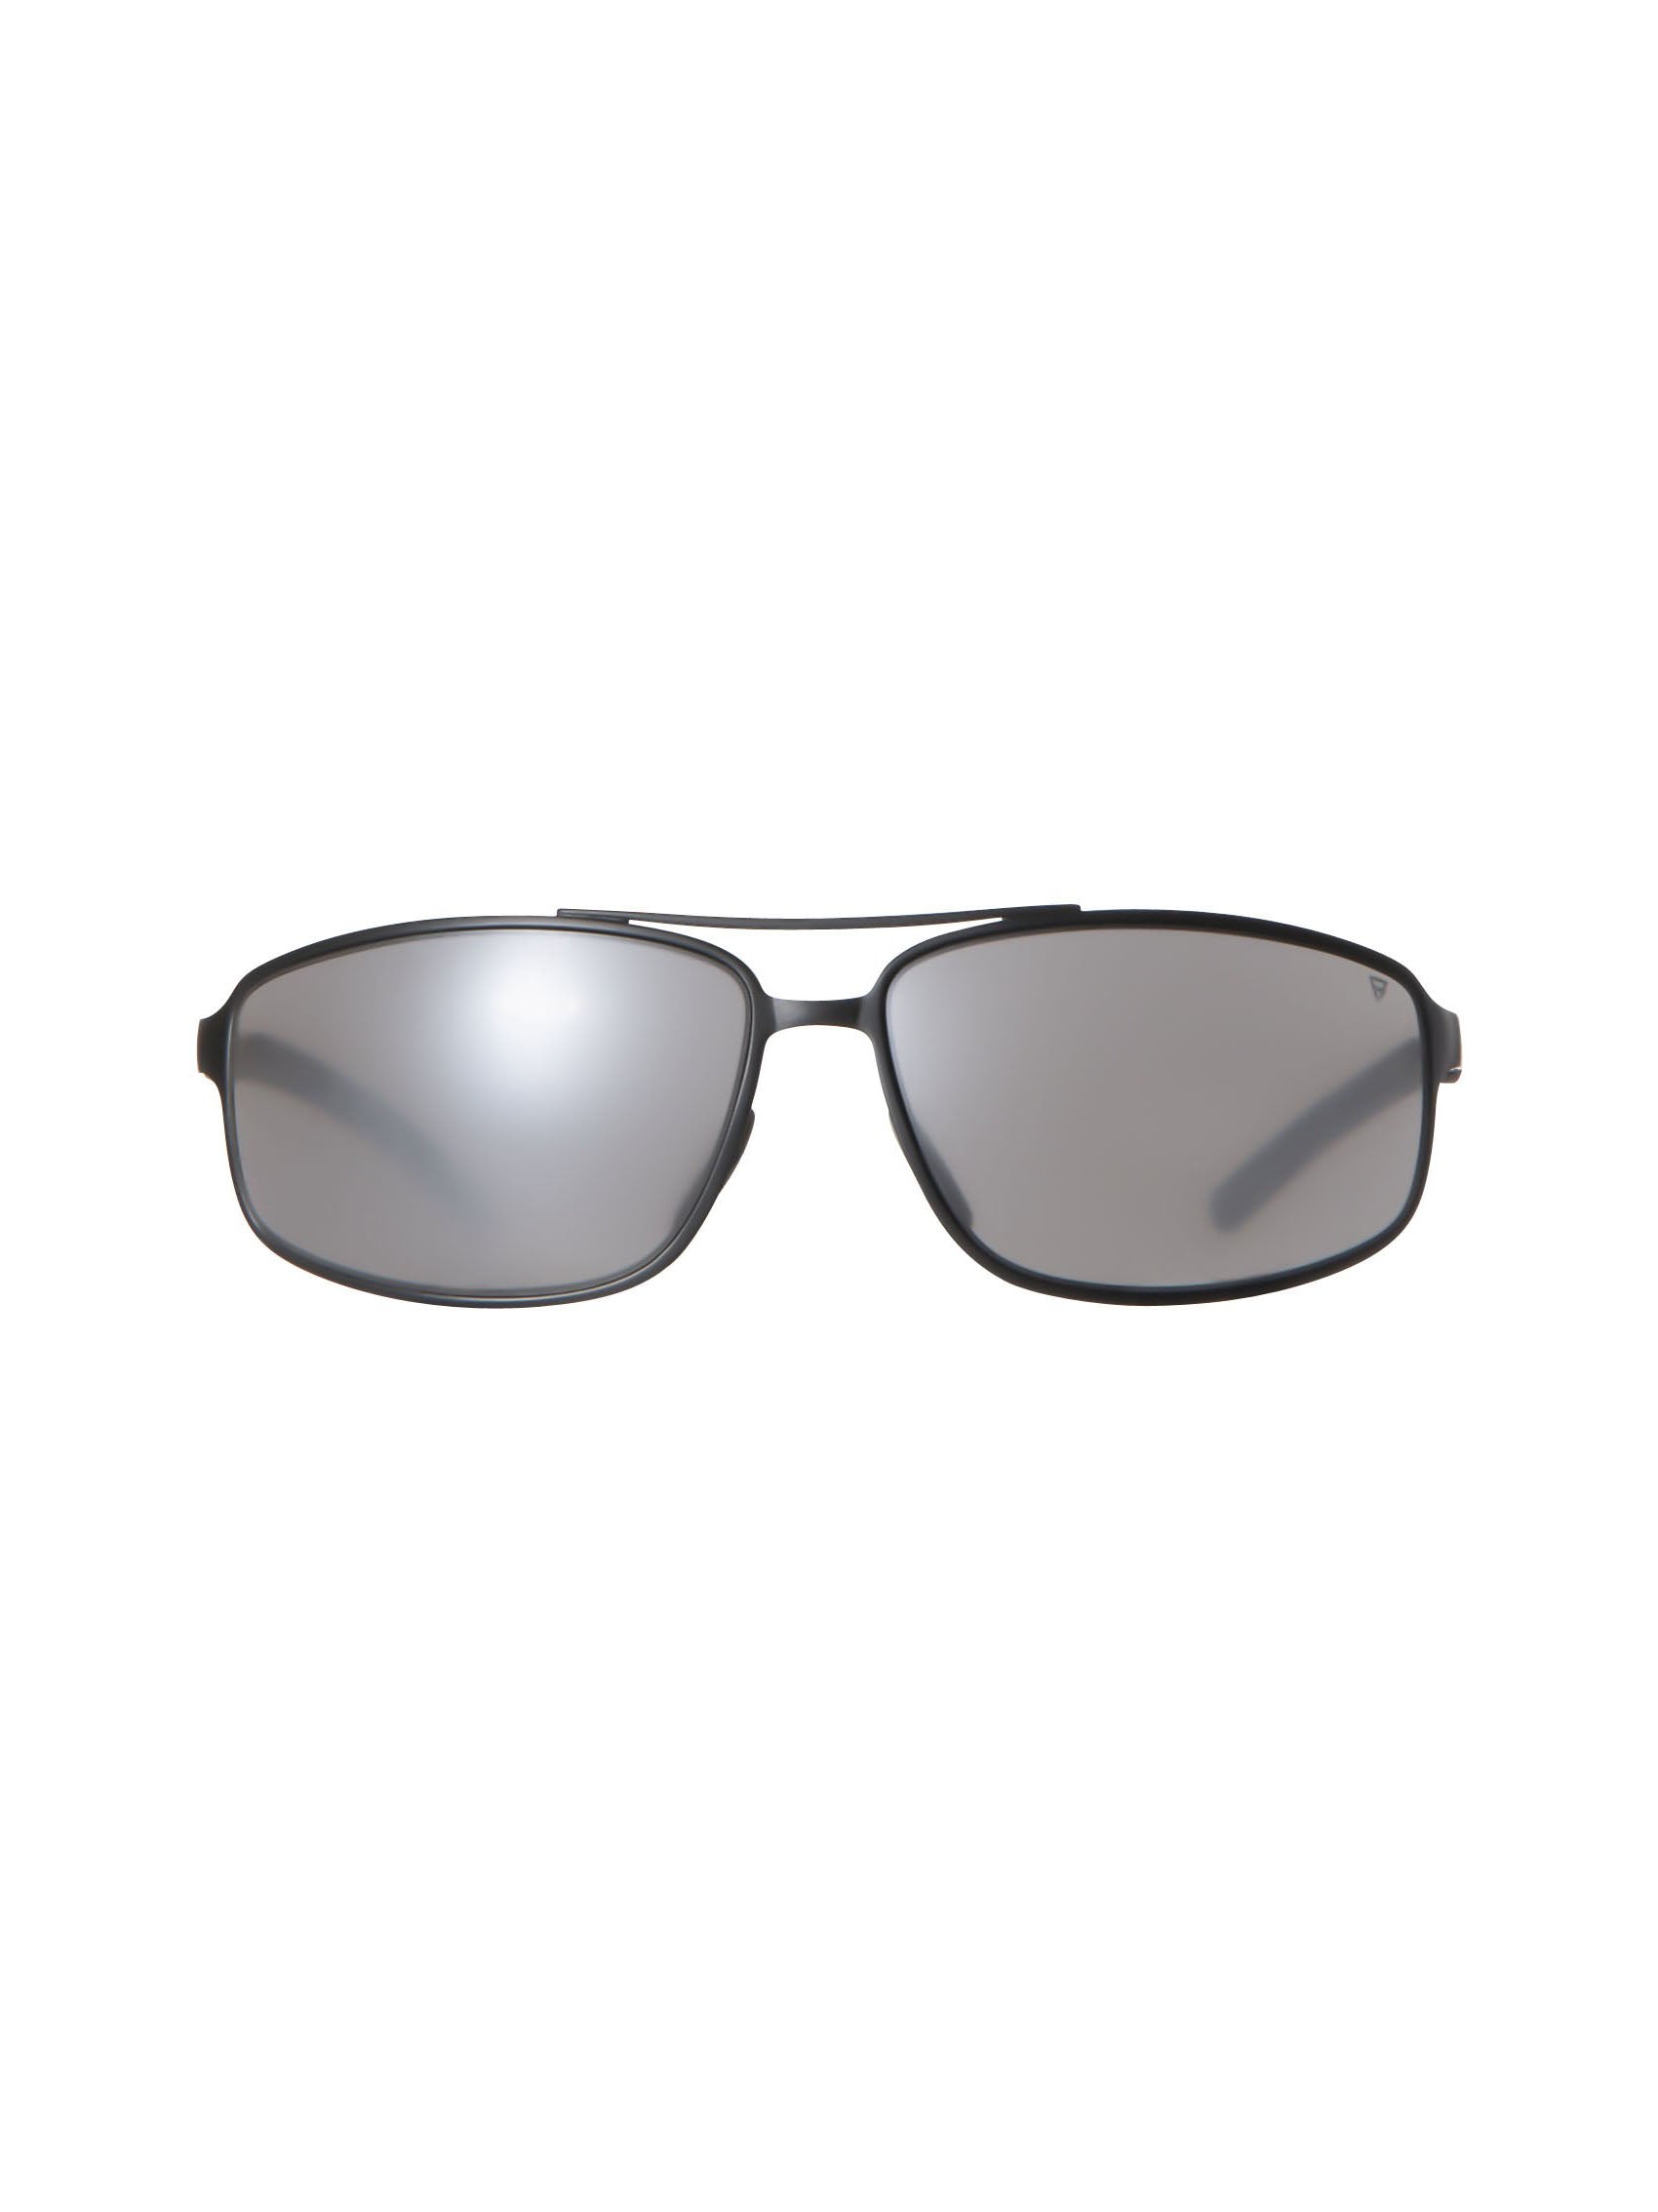 Kirkerud 1 Sunglasses | Black